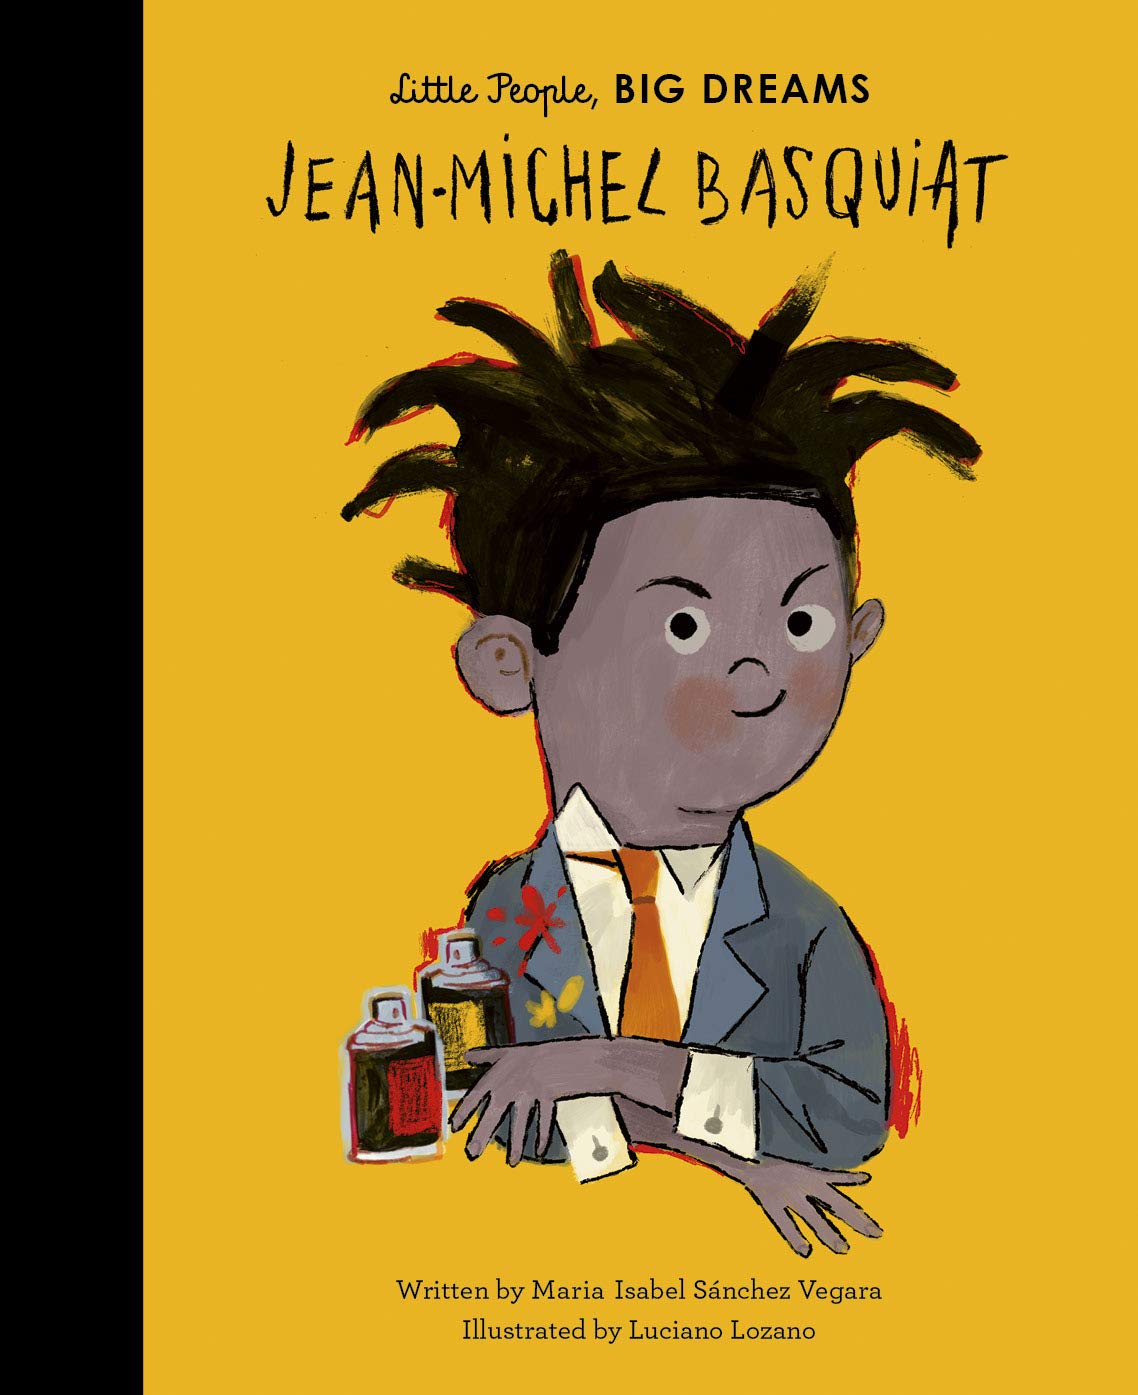 Basquiat by Isabella Sanchez Vegara